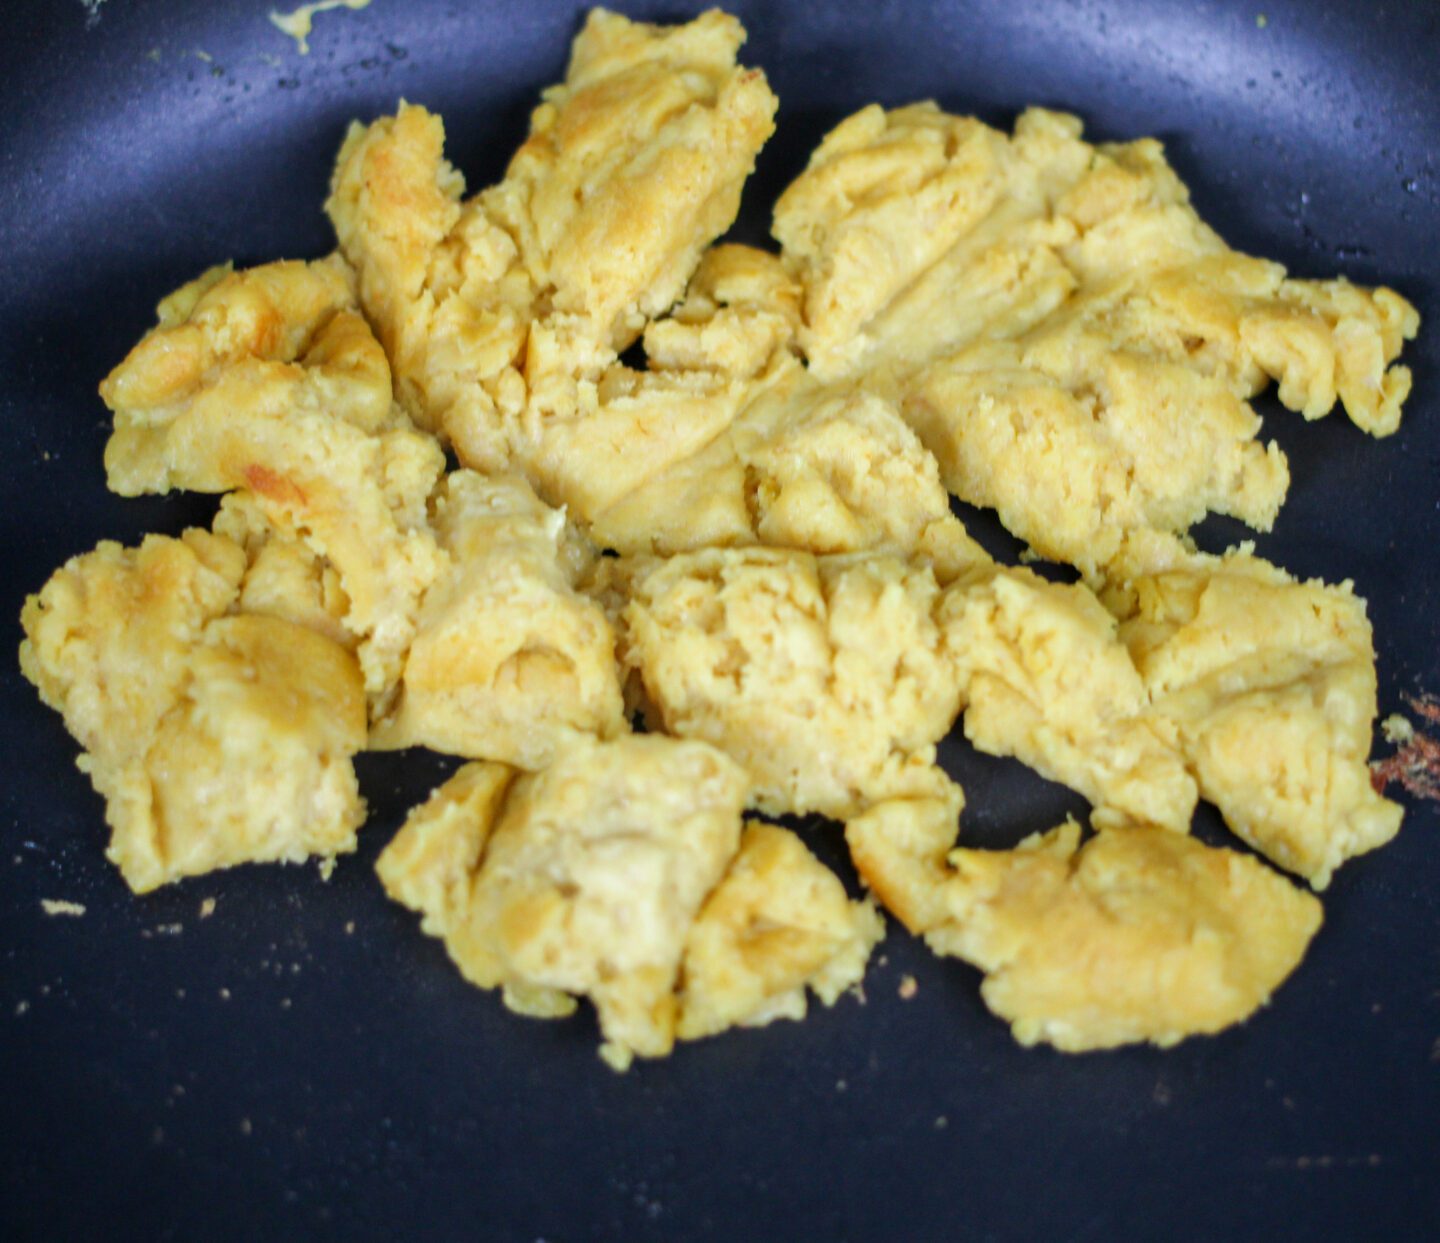 Homemade Just Egg Mix (no chickpeas or tofu) - Liv B.